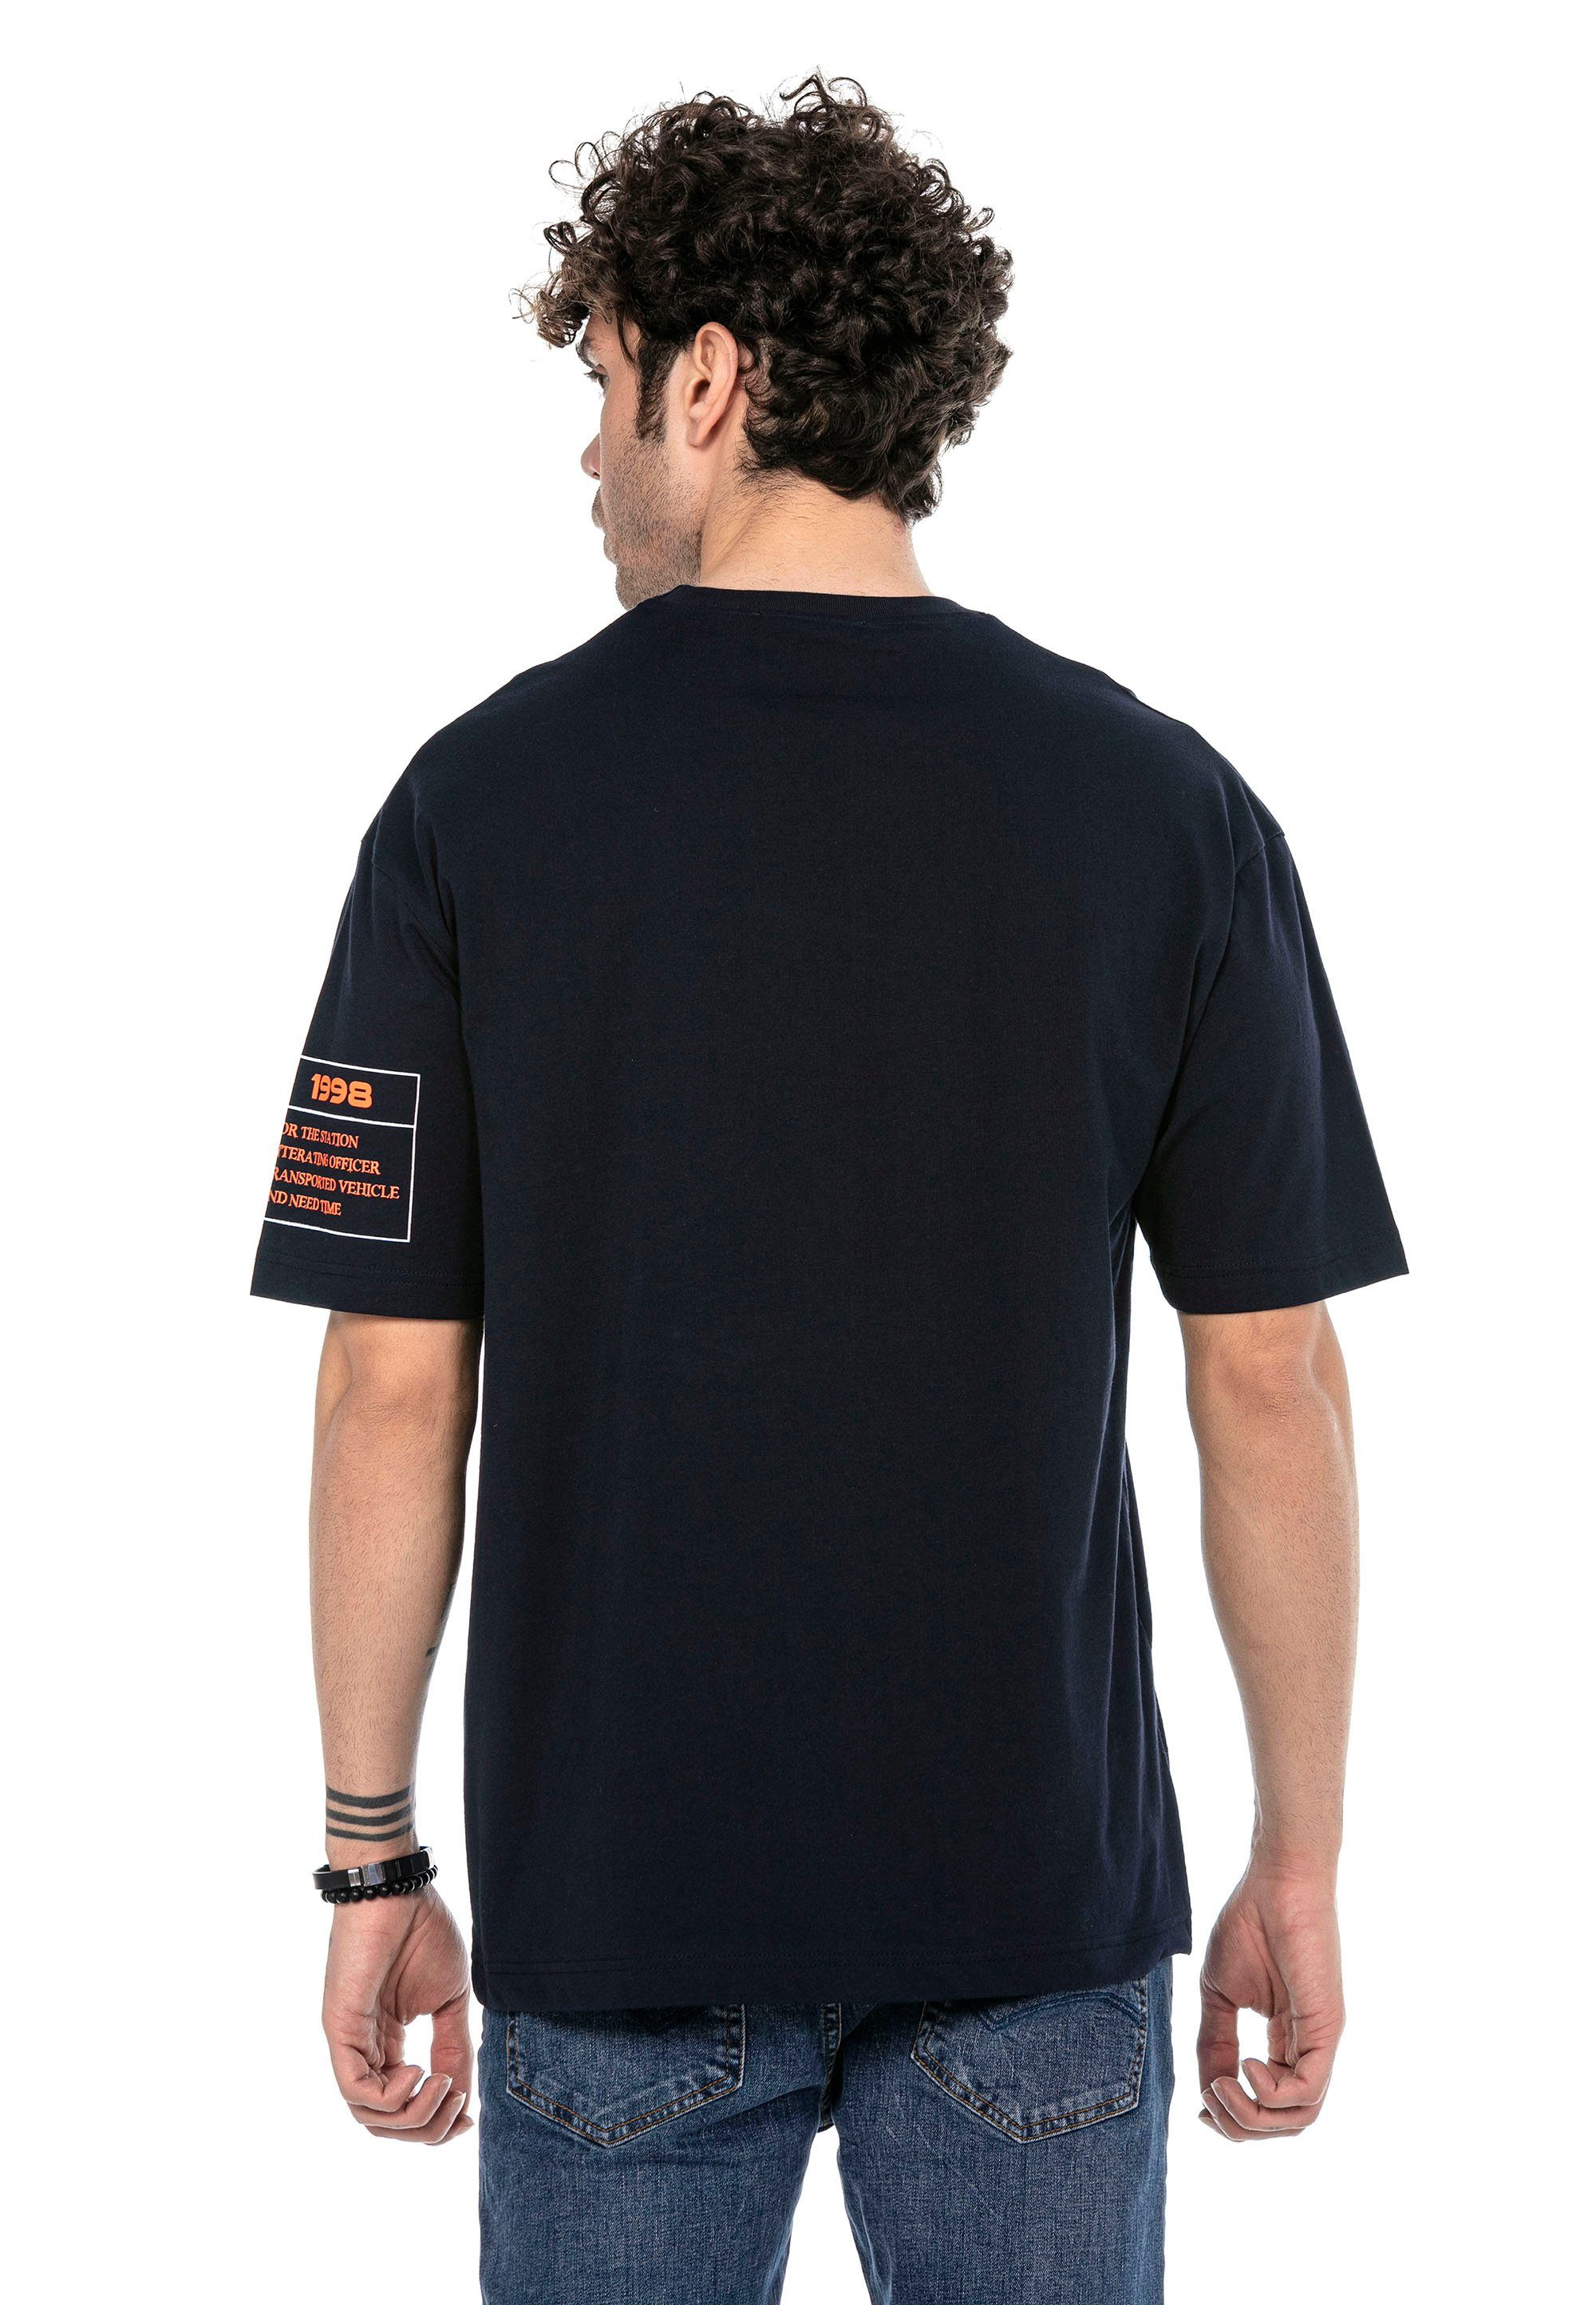 McAllen RedBridge stylischem mit T-Shirt dunkelblau Totenkopf-Print